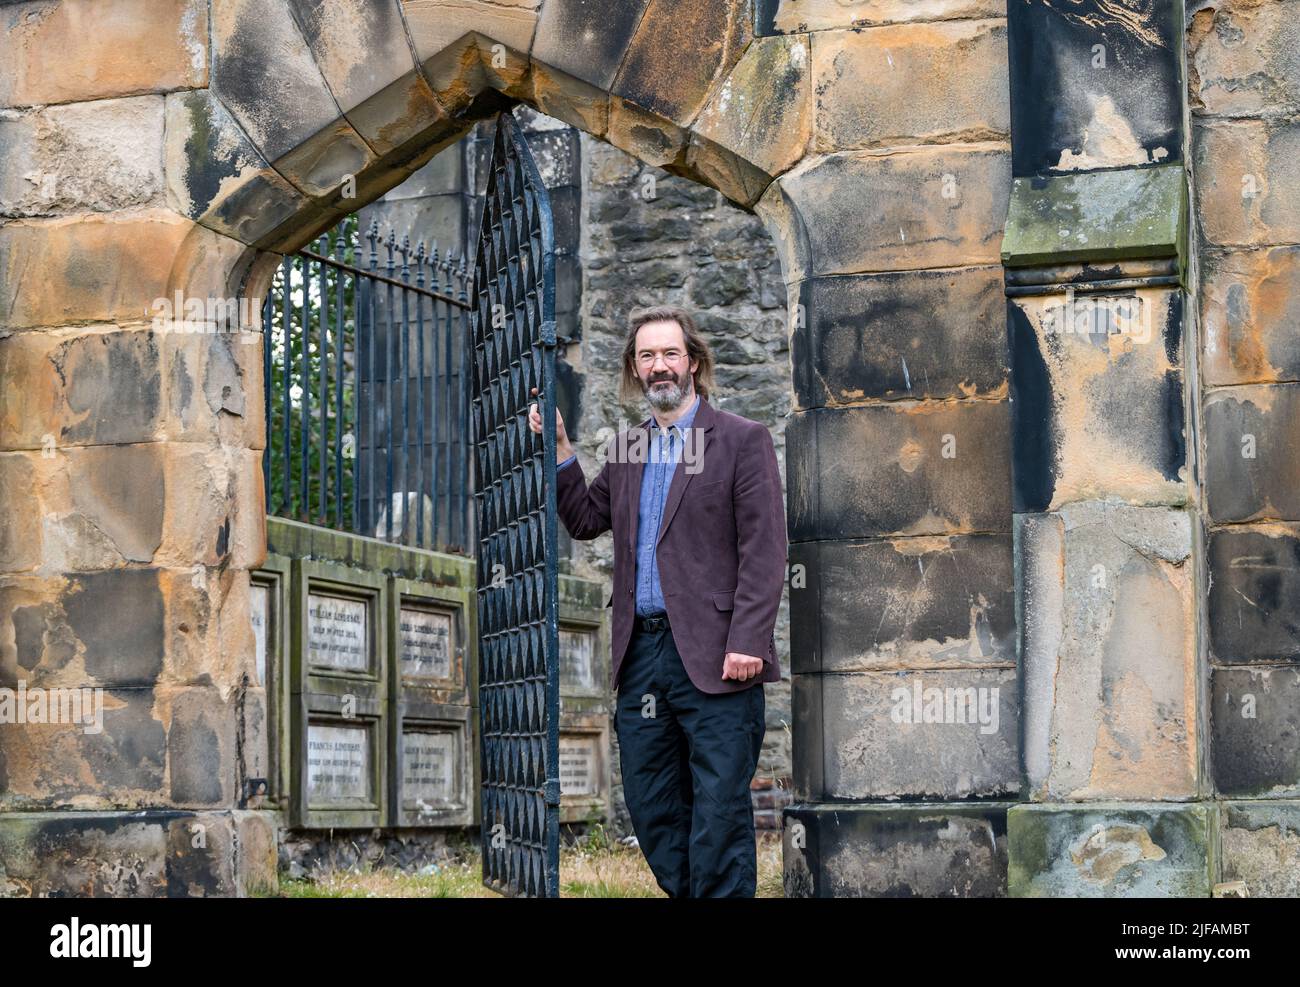 L'auteur écossais James Oswald, auteur du crime, dans le cimetière de l'église paroissiale de Leith Sud, est décoré d'une grille dans un mausolée, à Édimbourg, en Écosse, au Royaume-Uni Banque D'Images